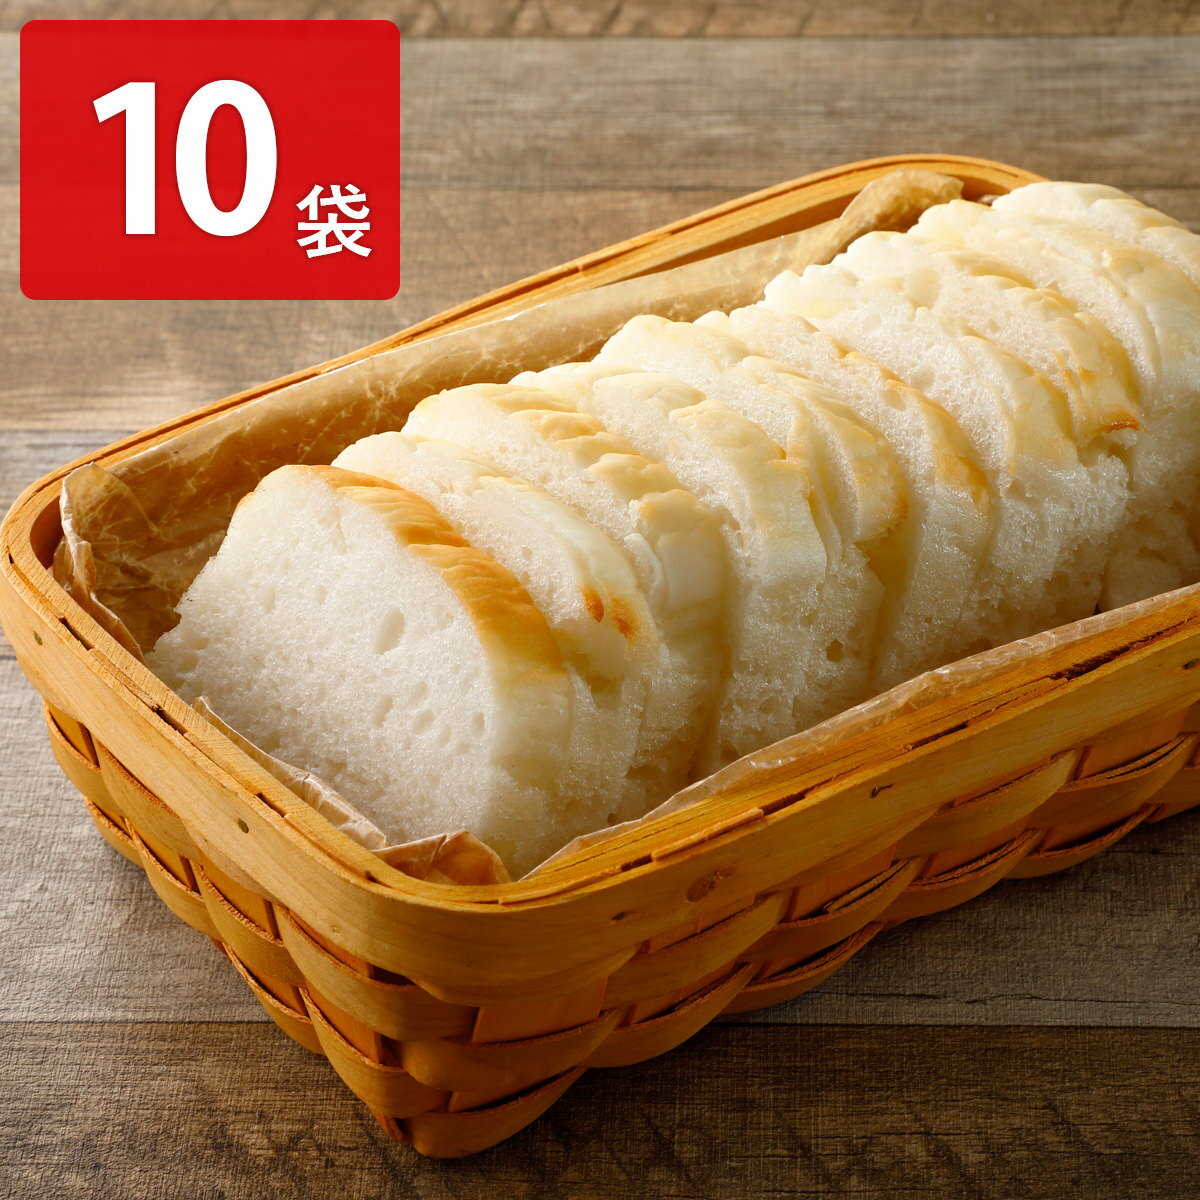 米粉パン みんなの食卓 ふっくら米粉パン スライス 16枚入10袋セット パン グルテンフリー 米粉パン ニッポンハム 食パン アレルギー対応 お米パン